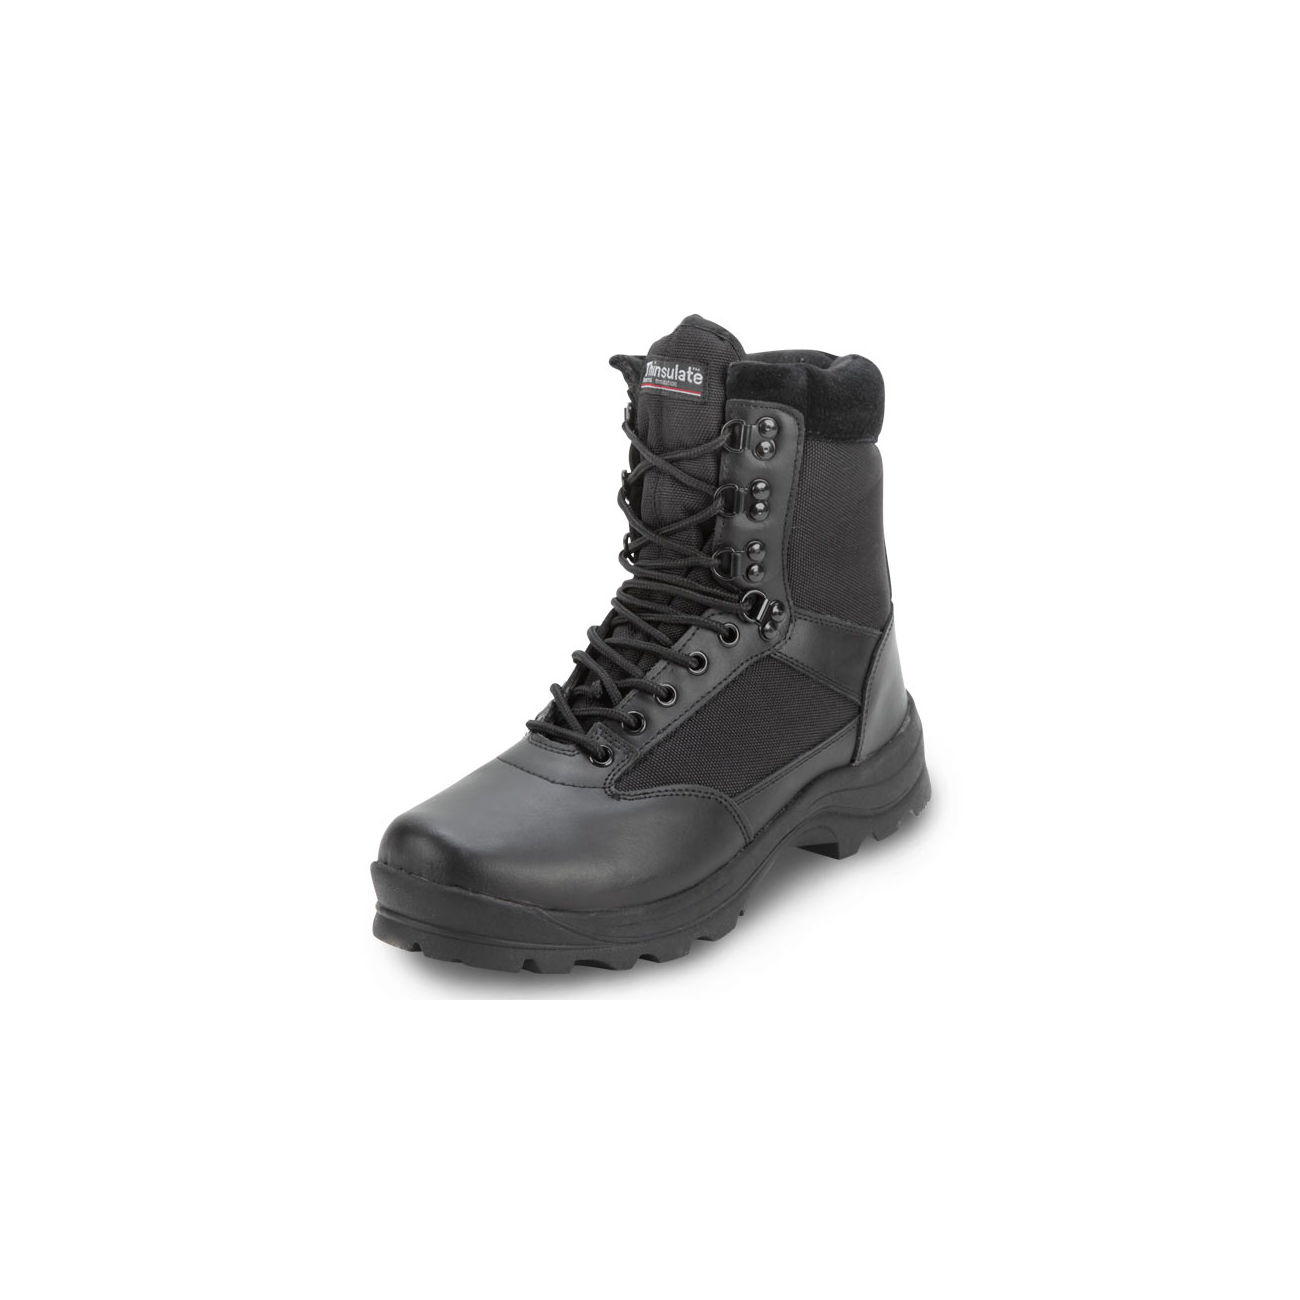 Brandit Boots Tactical 9-eye schwarz